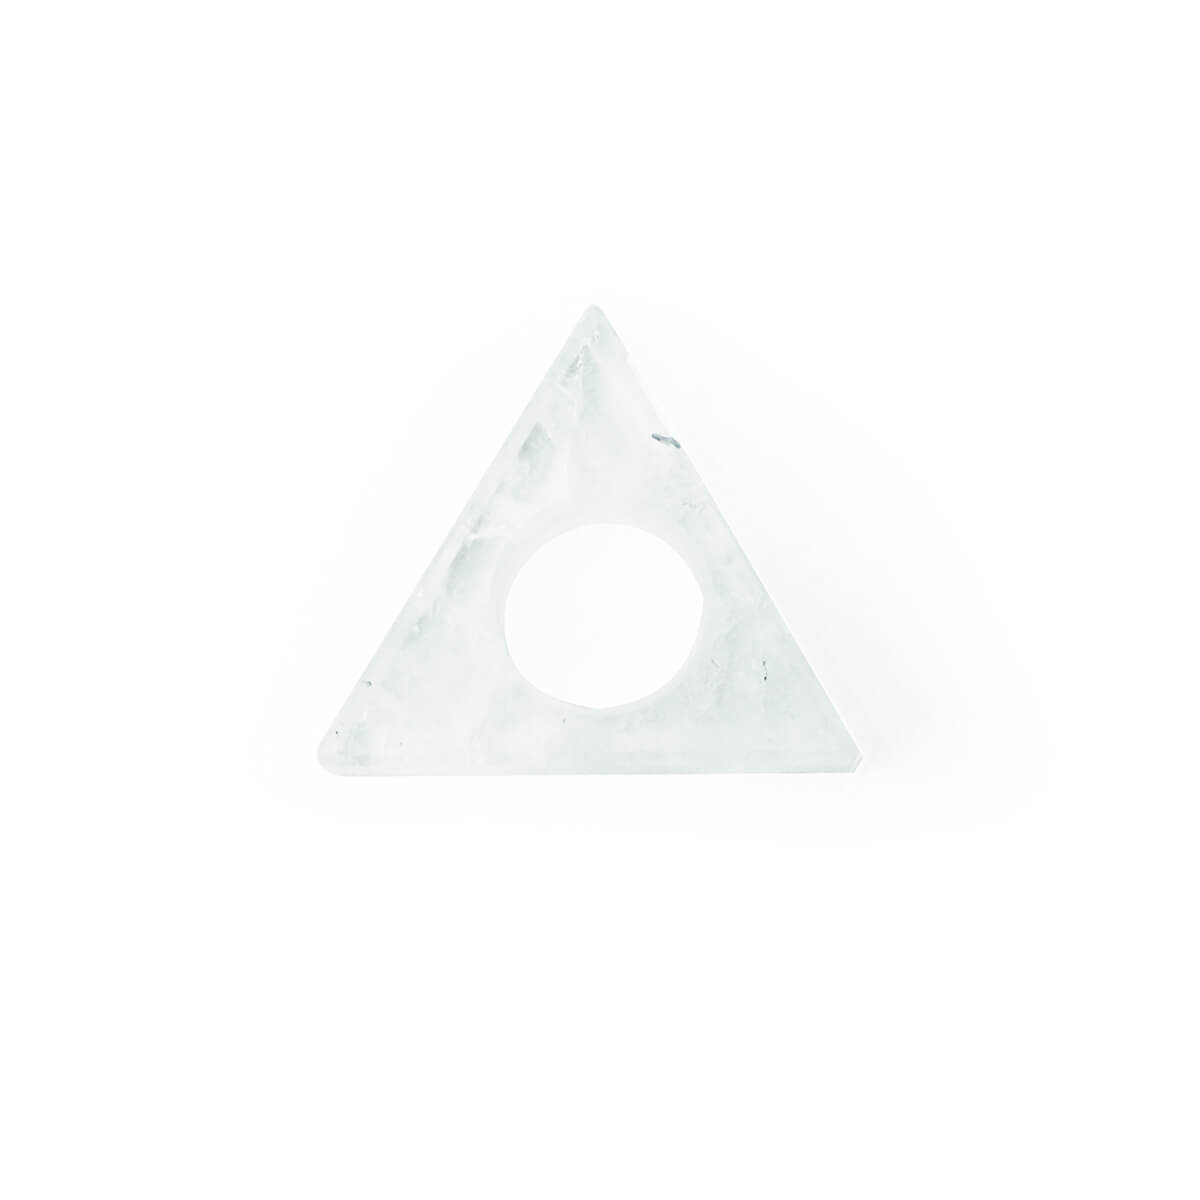 Triángulo cuarzo